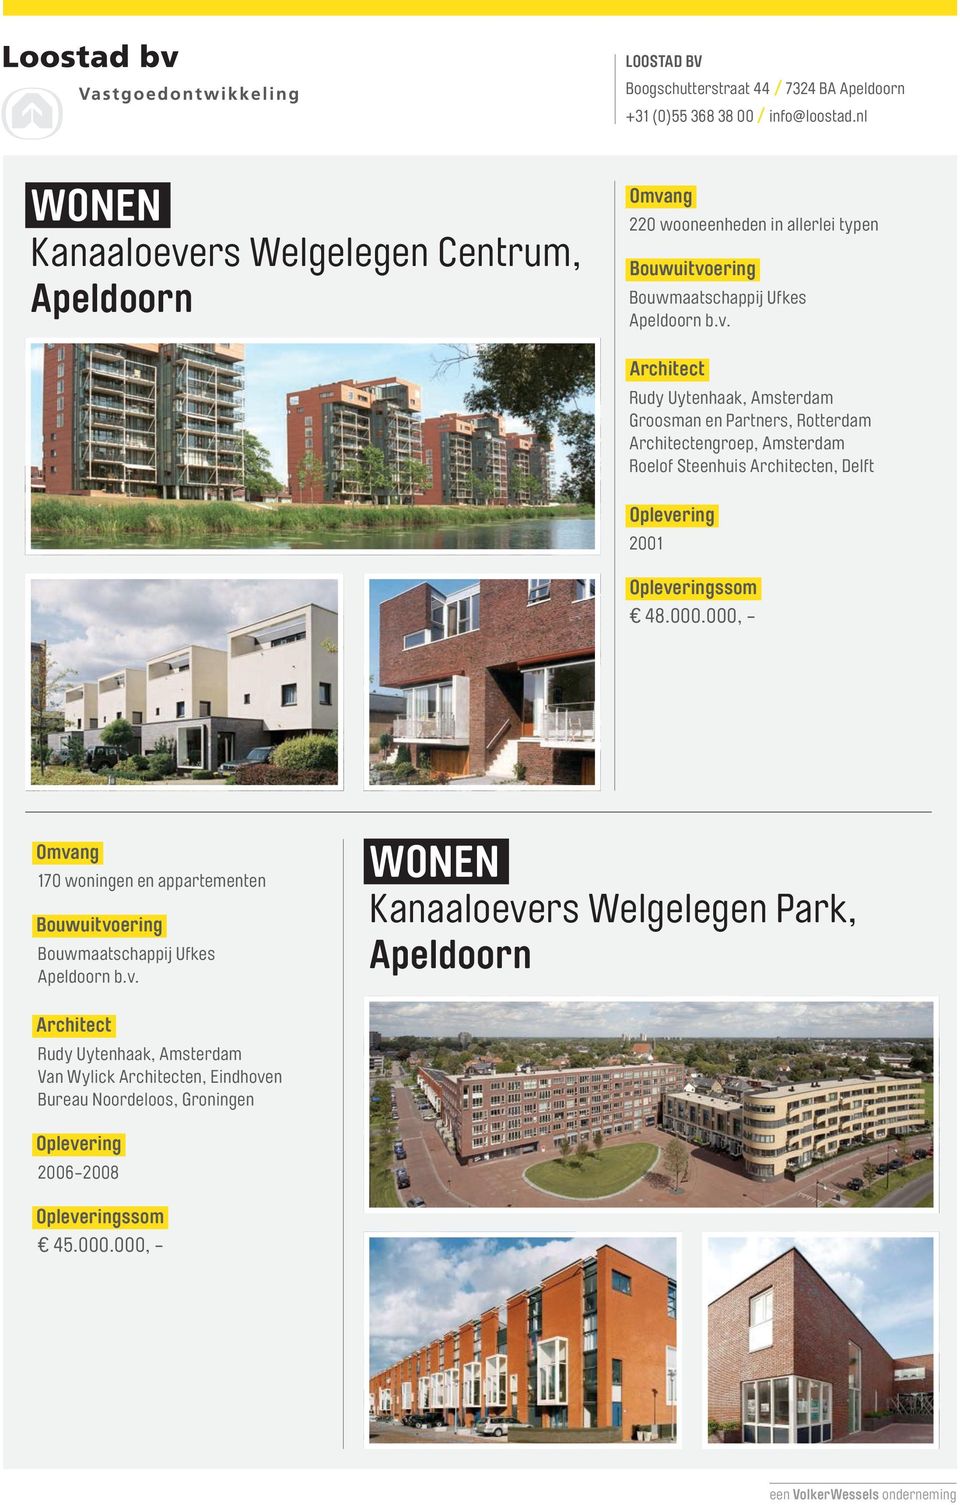 48.000.000, - 170 woningen en appartementen Bouwmaatschappij Ufkes Apeldoorn b.v.